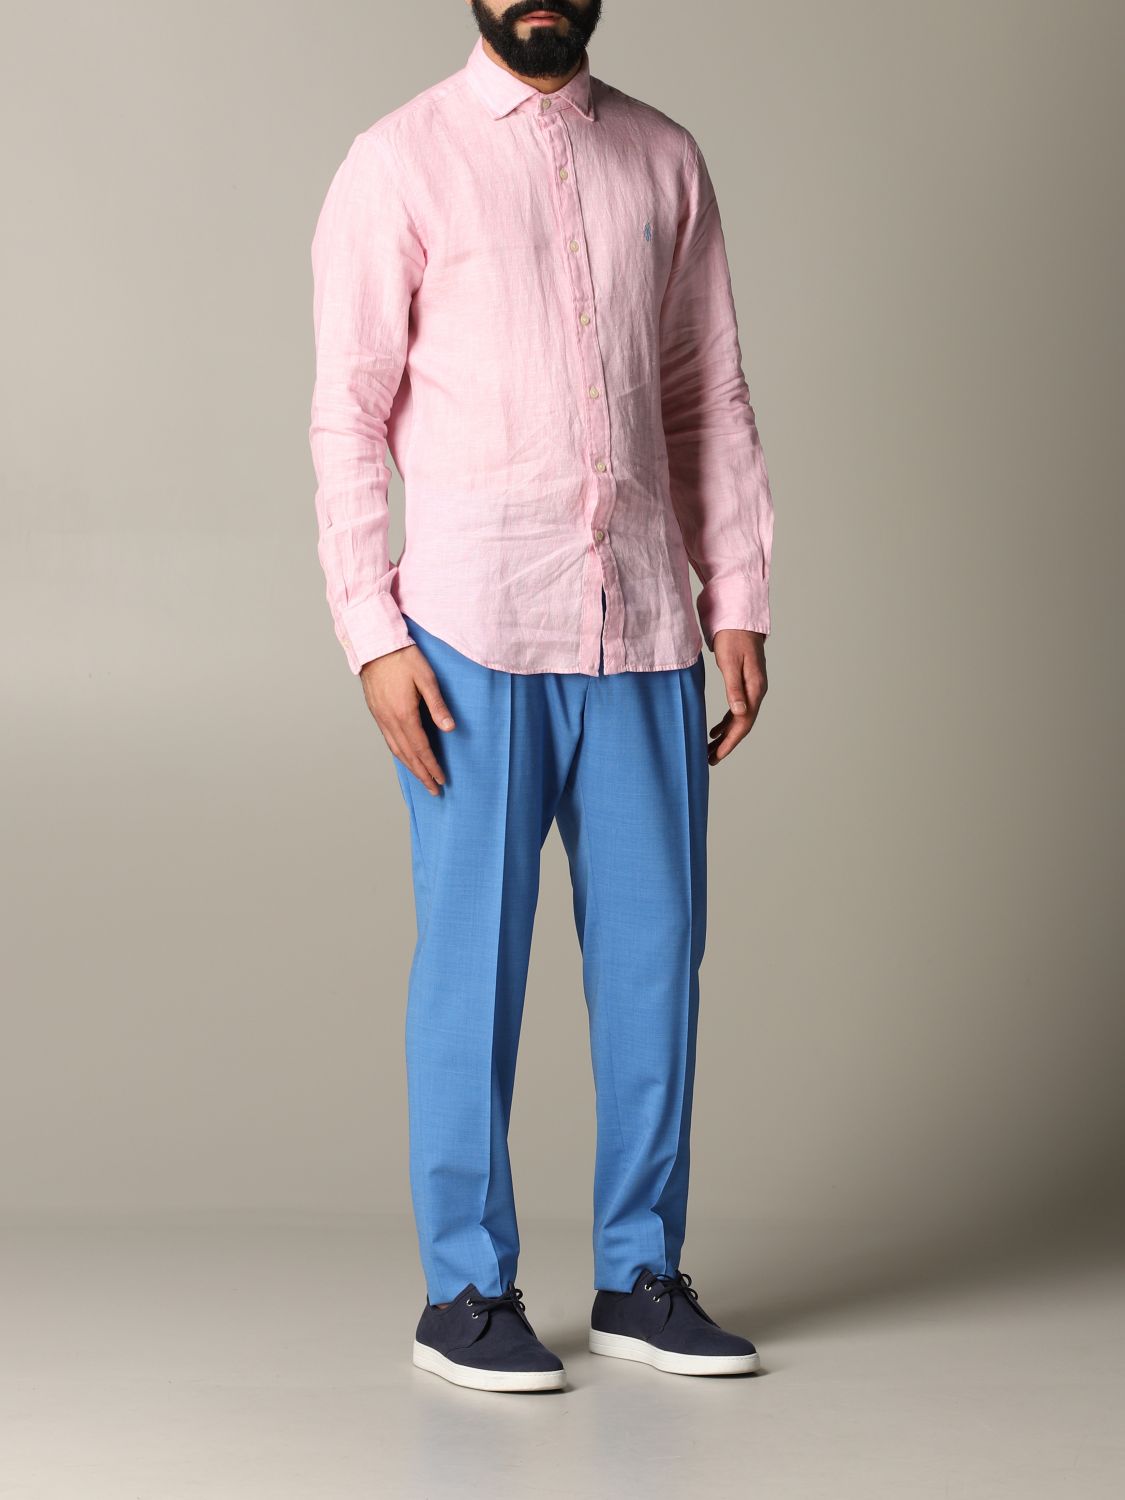 Shirt Polo Ralph Lauren: Polo Ralph Lauren shirt for men pink 2